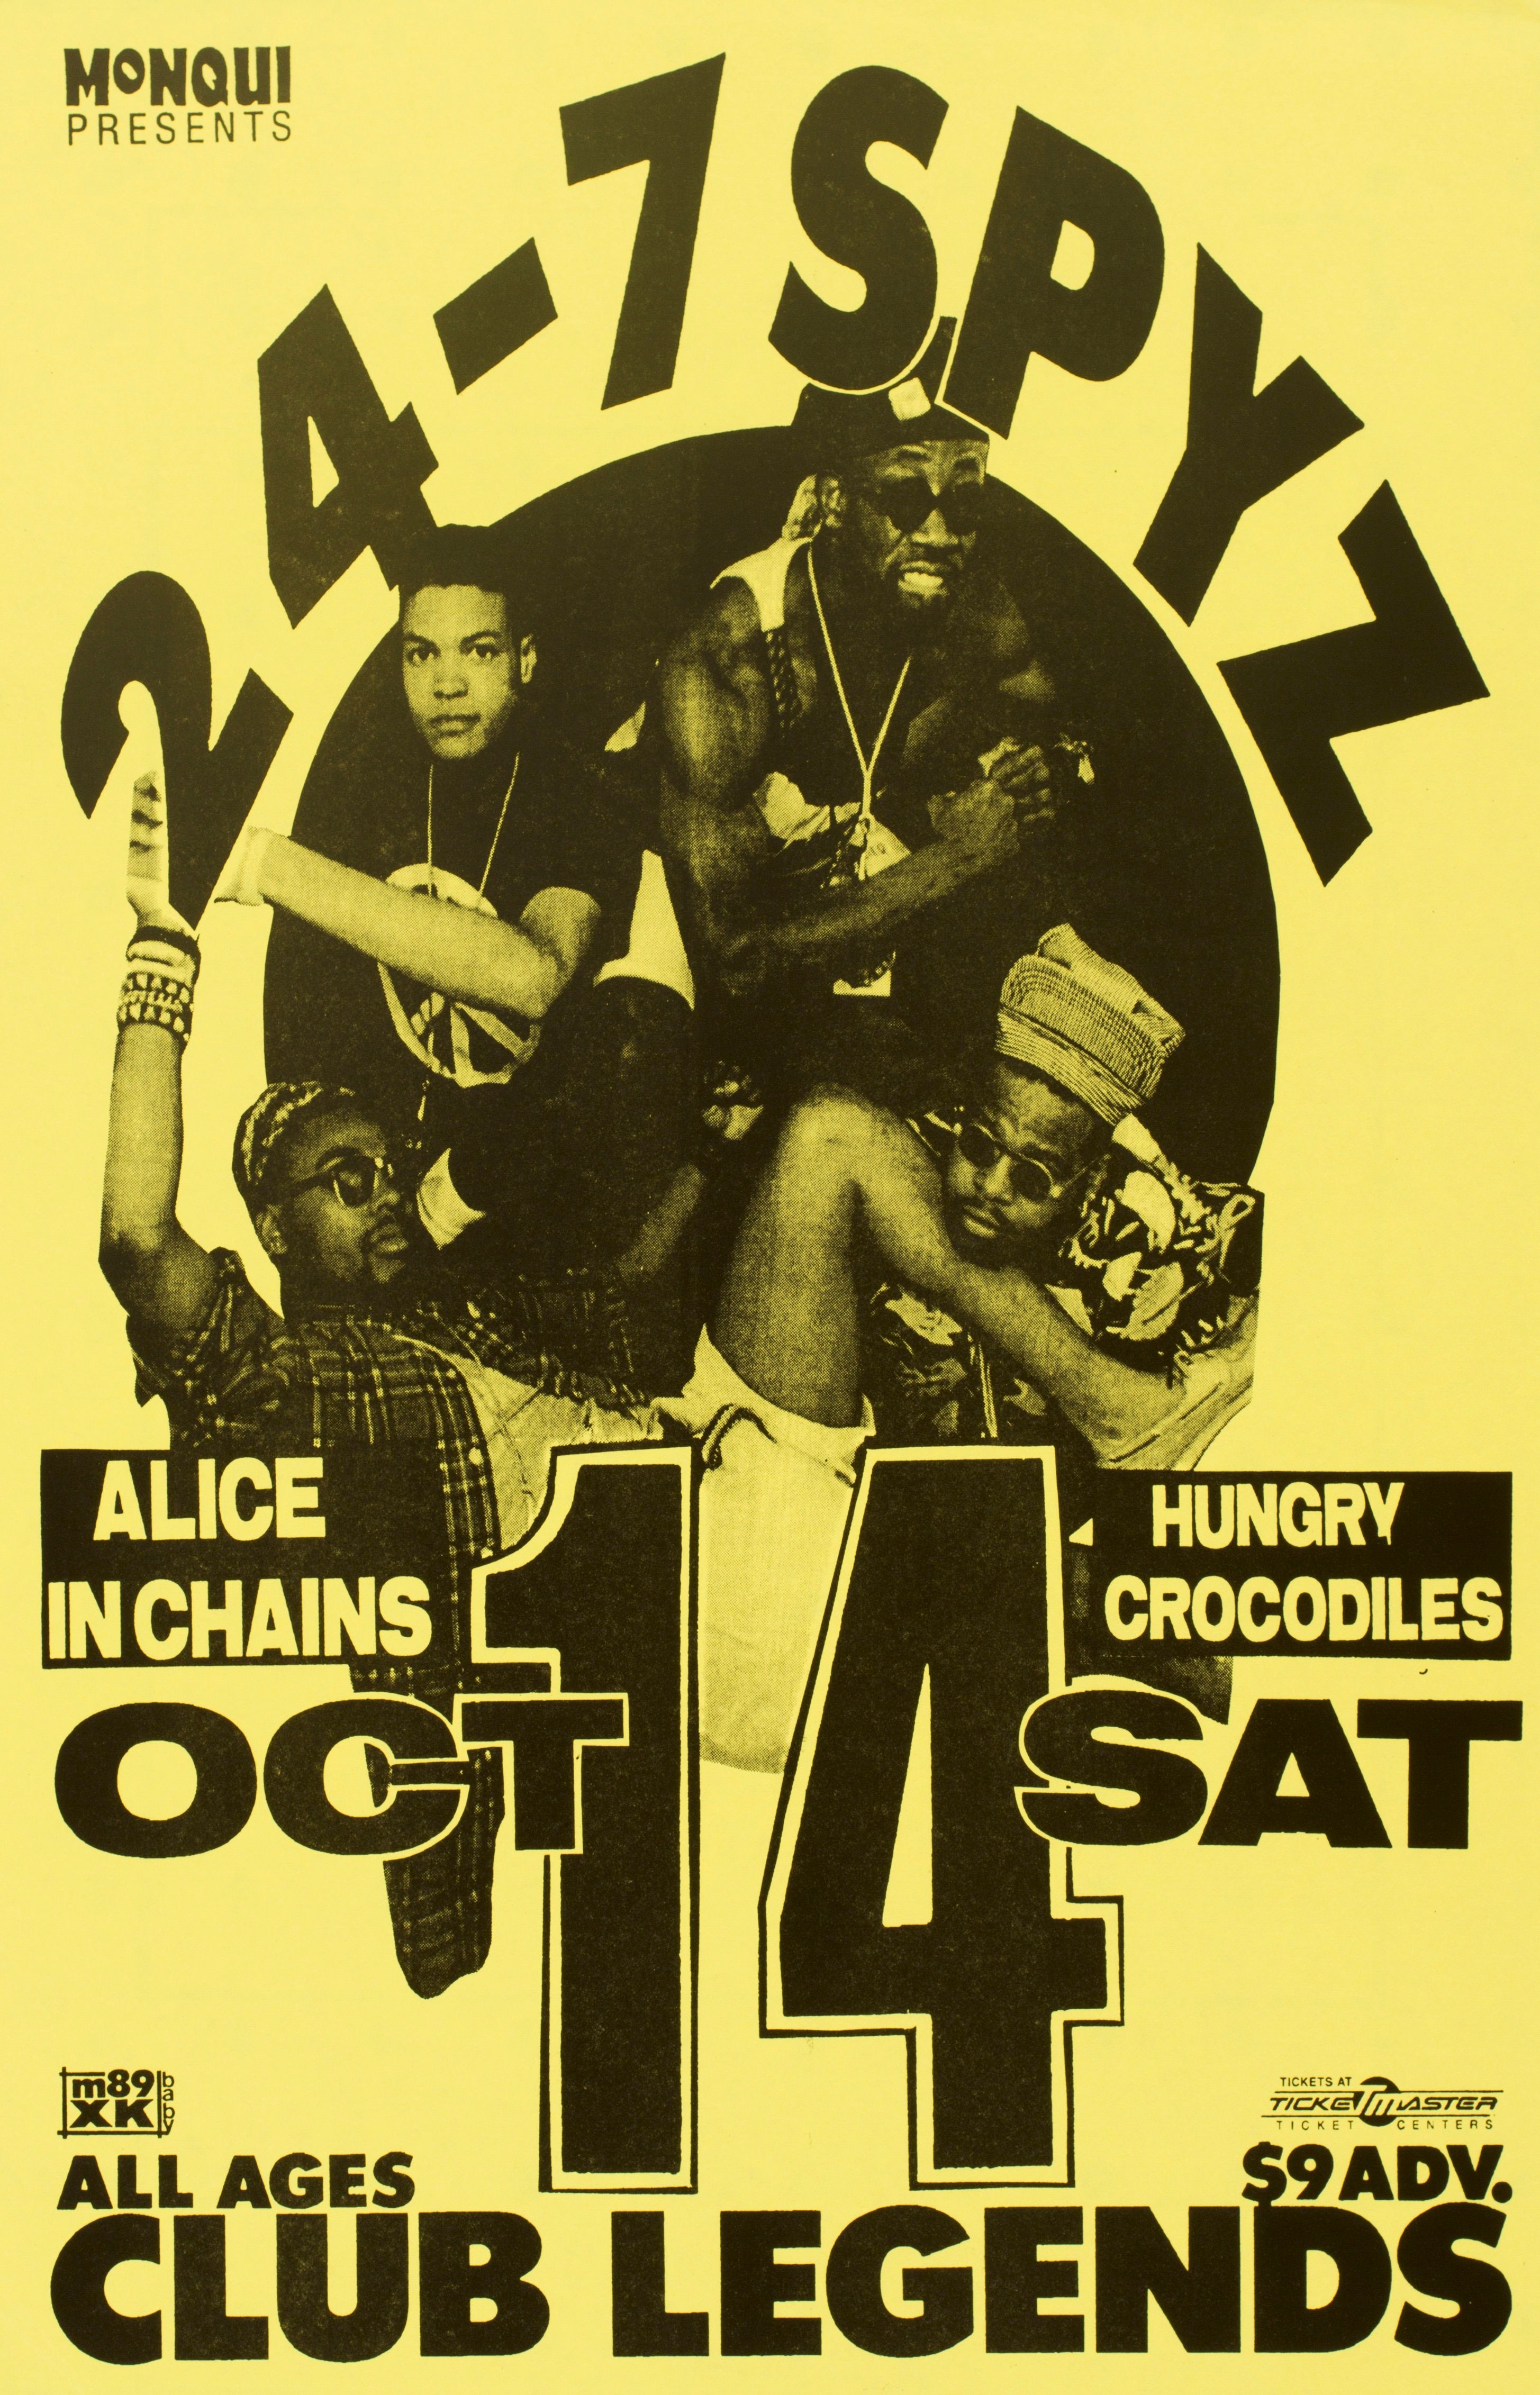 MXP-108.1 24-7 Spyz Club Legends 1989 Concert Poster